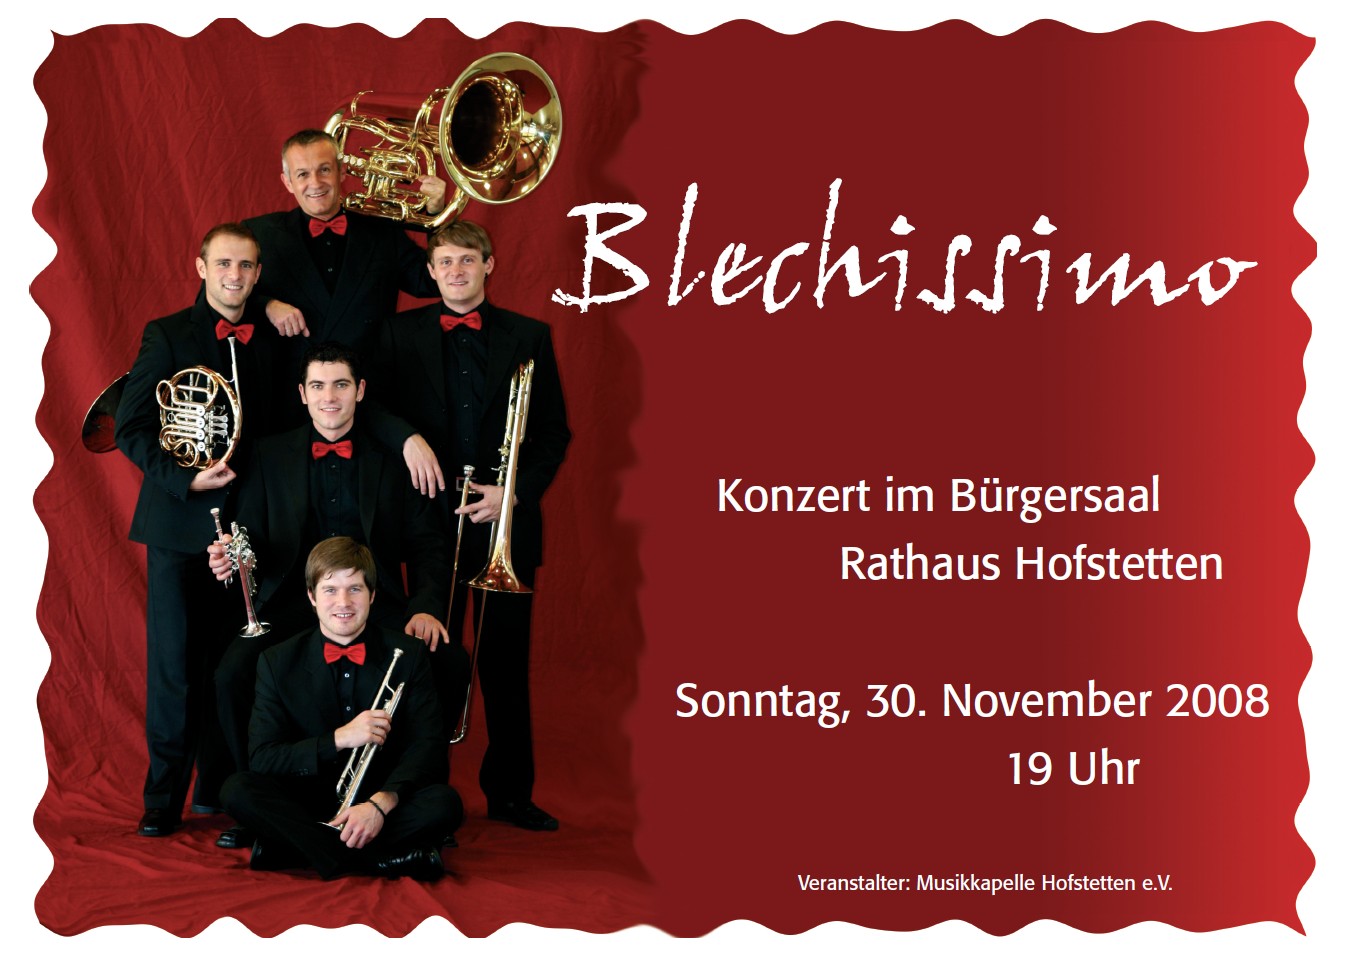 Foto Blechissimo - Konzertplakat 2008 Hofstetten